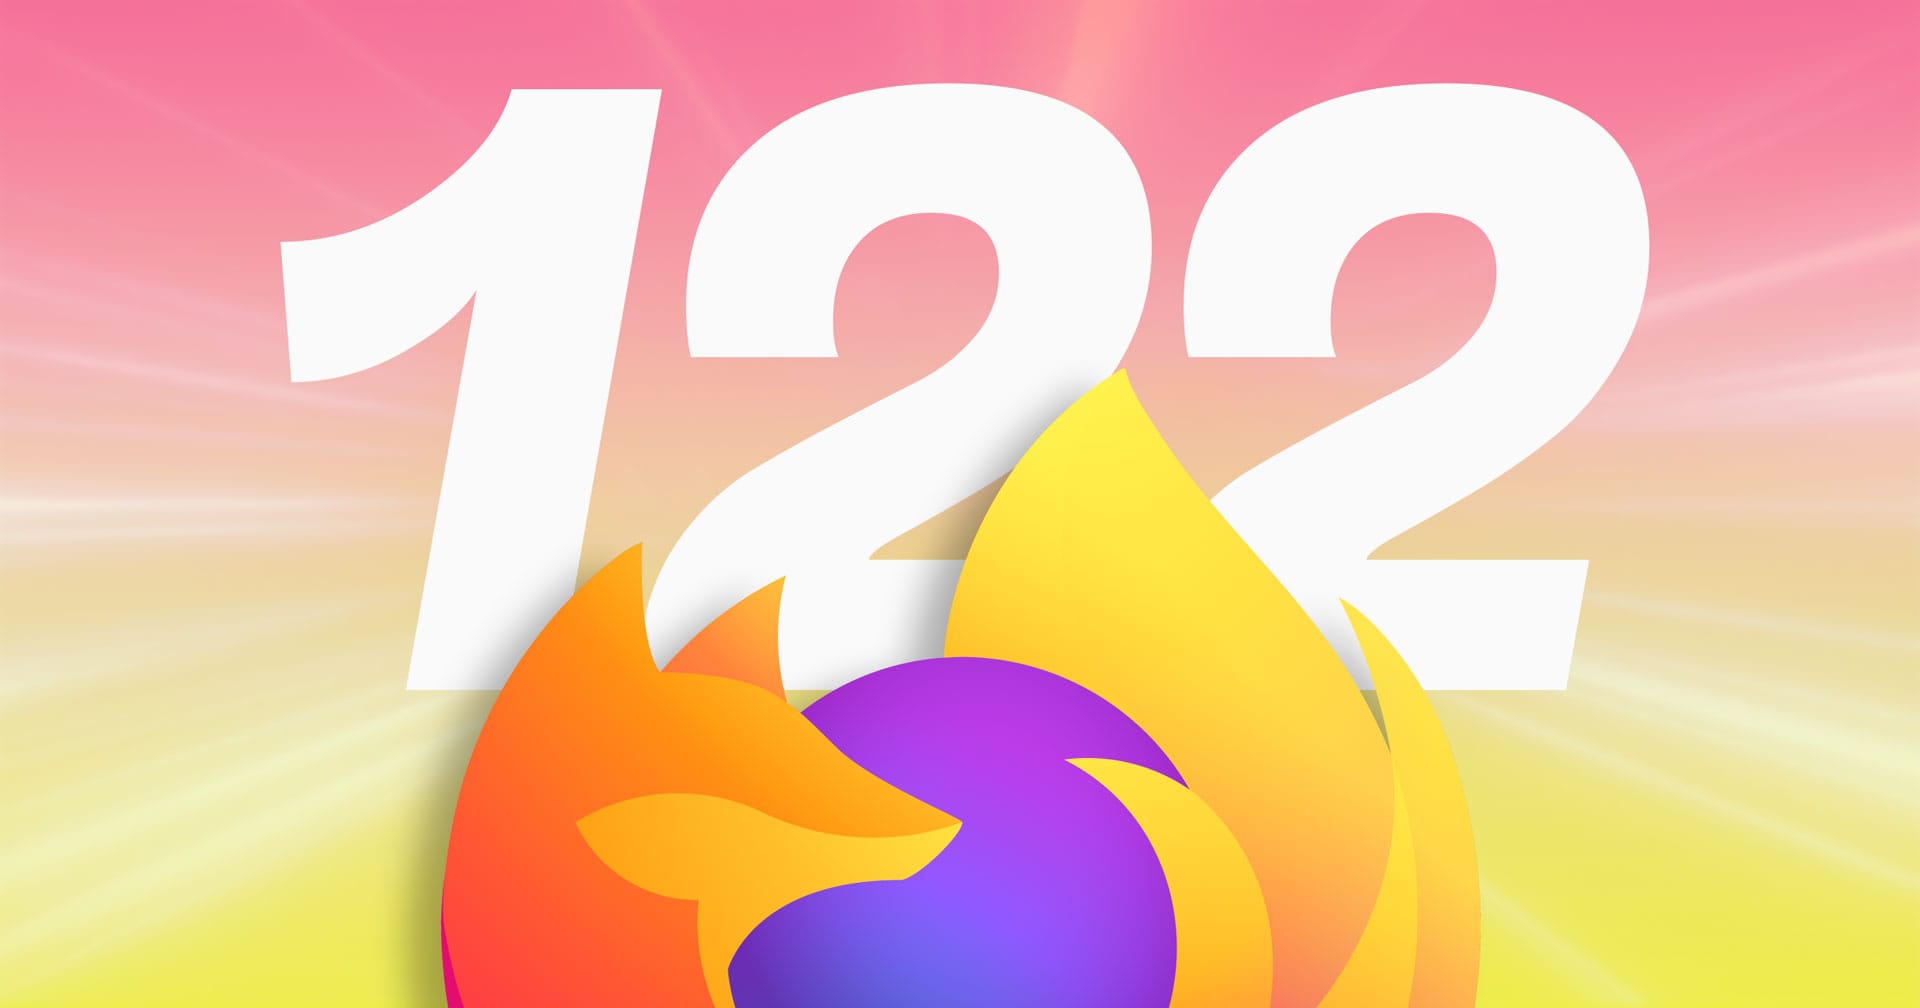 Вышел Firefox 122 с улучшенными предложениями поиска, переводом и многим другим